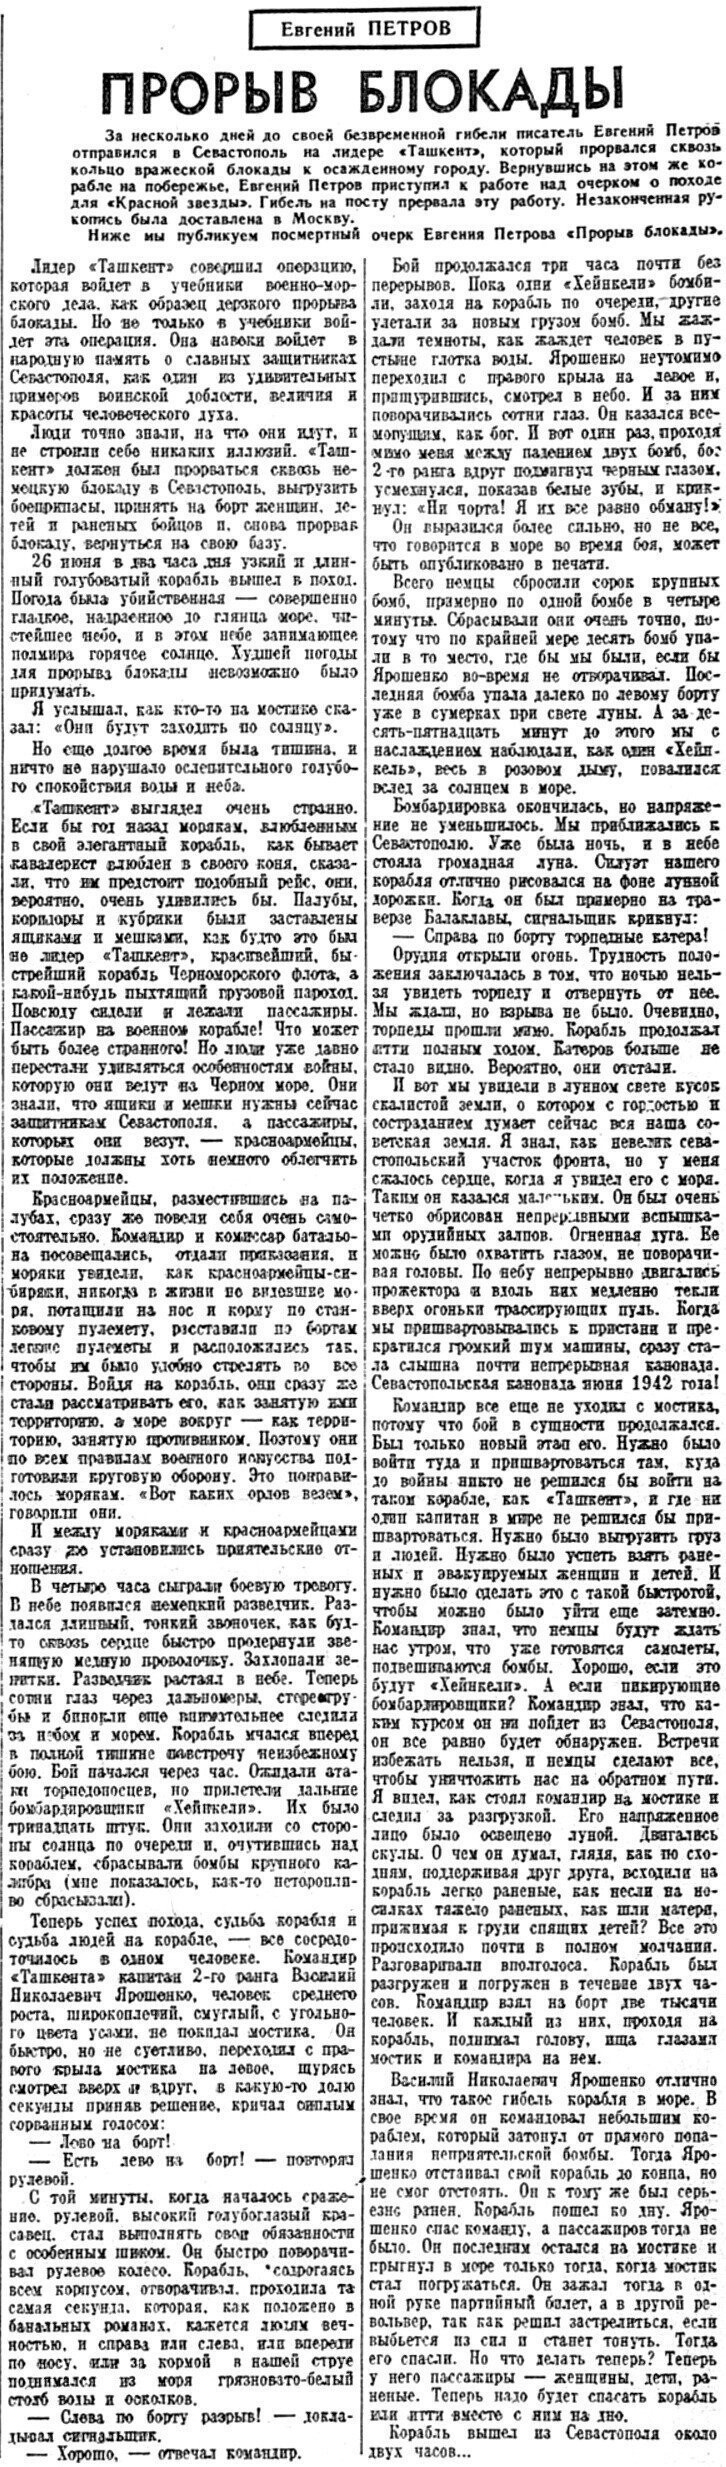 «Красная звезда», 9 июля 1942 г.